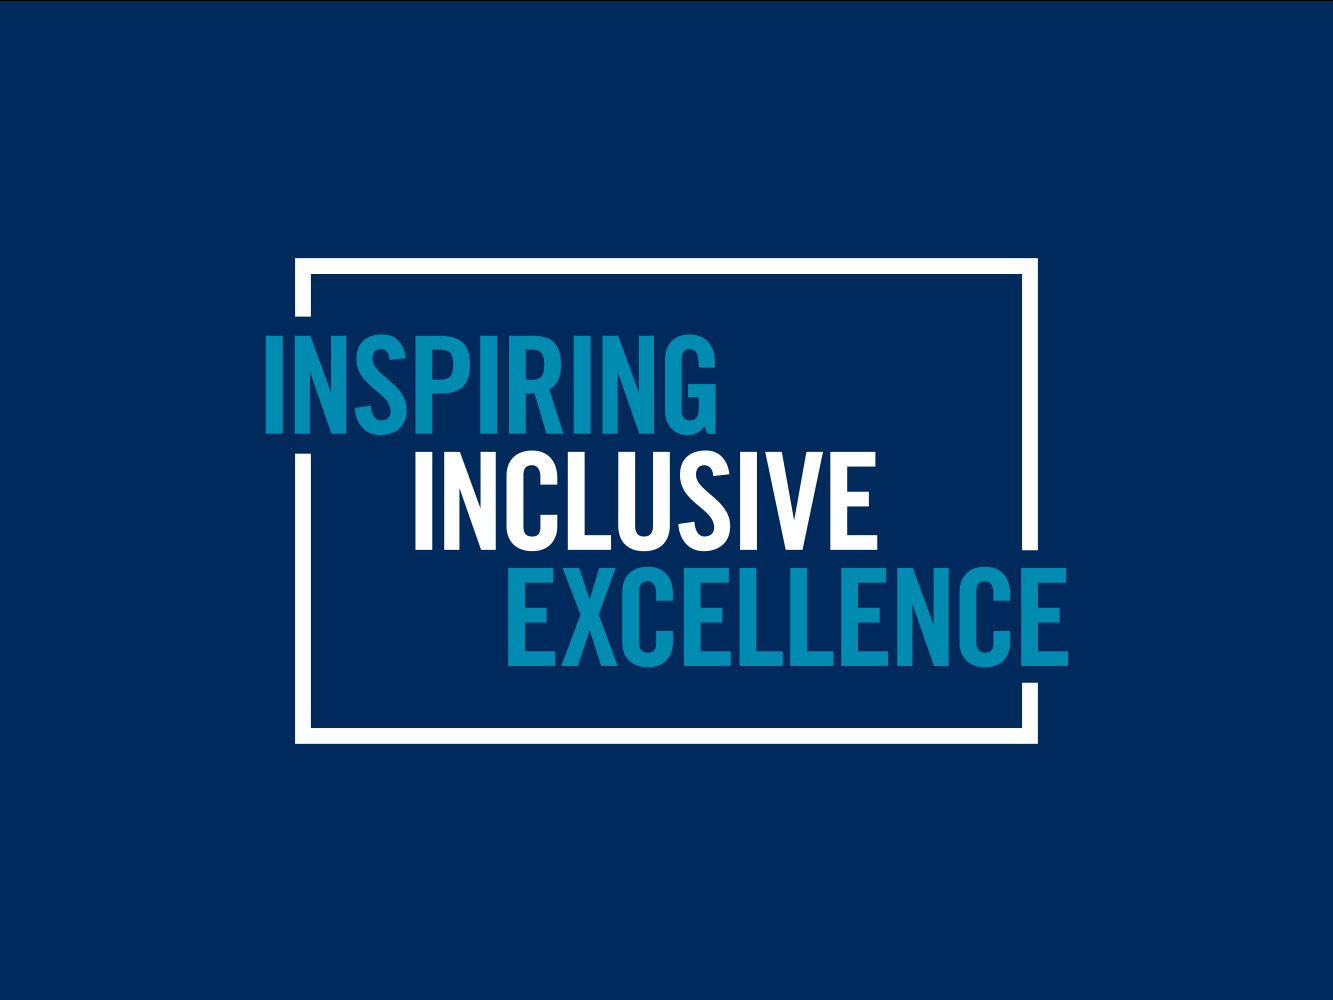 Inspiring inclusive excellence wordmark.